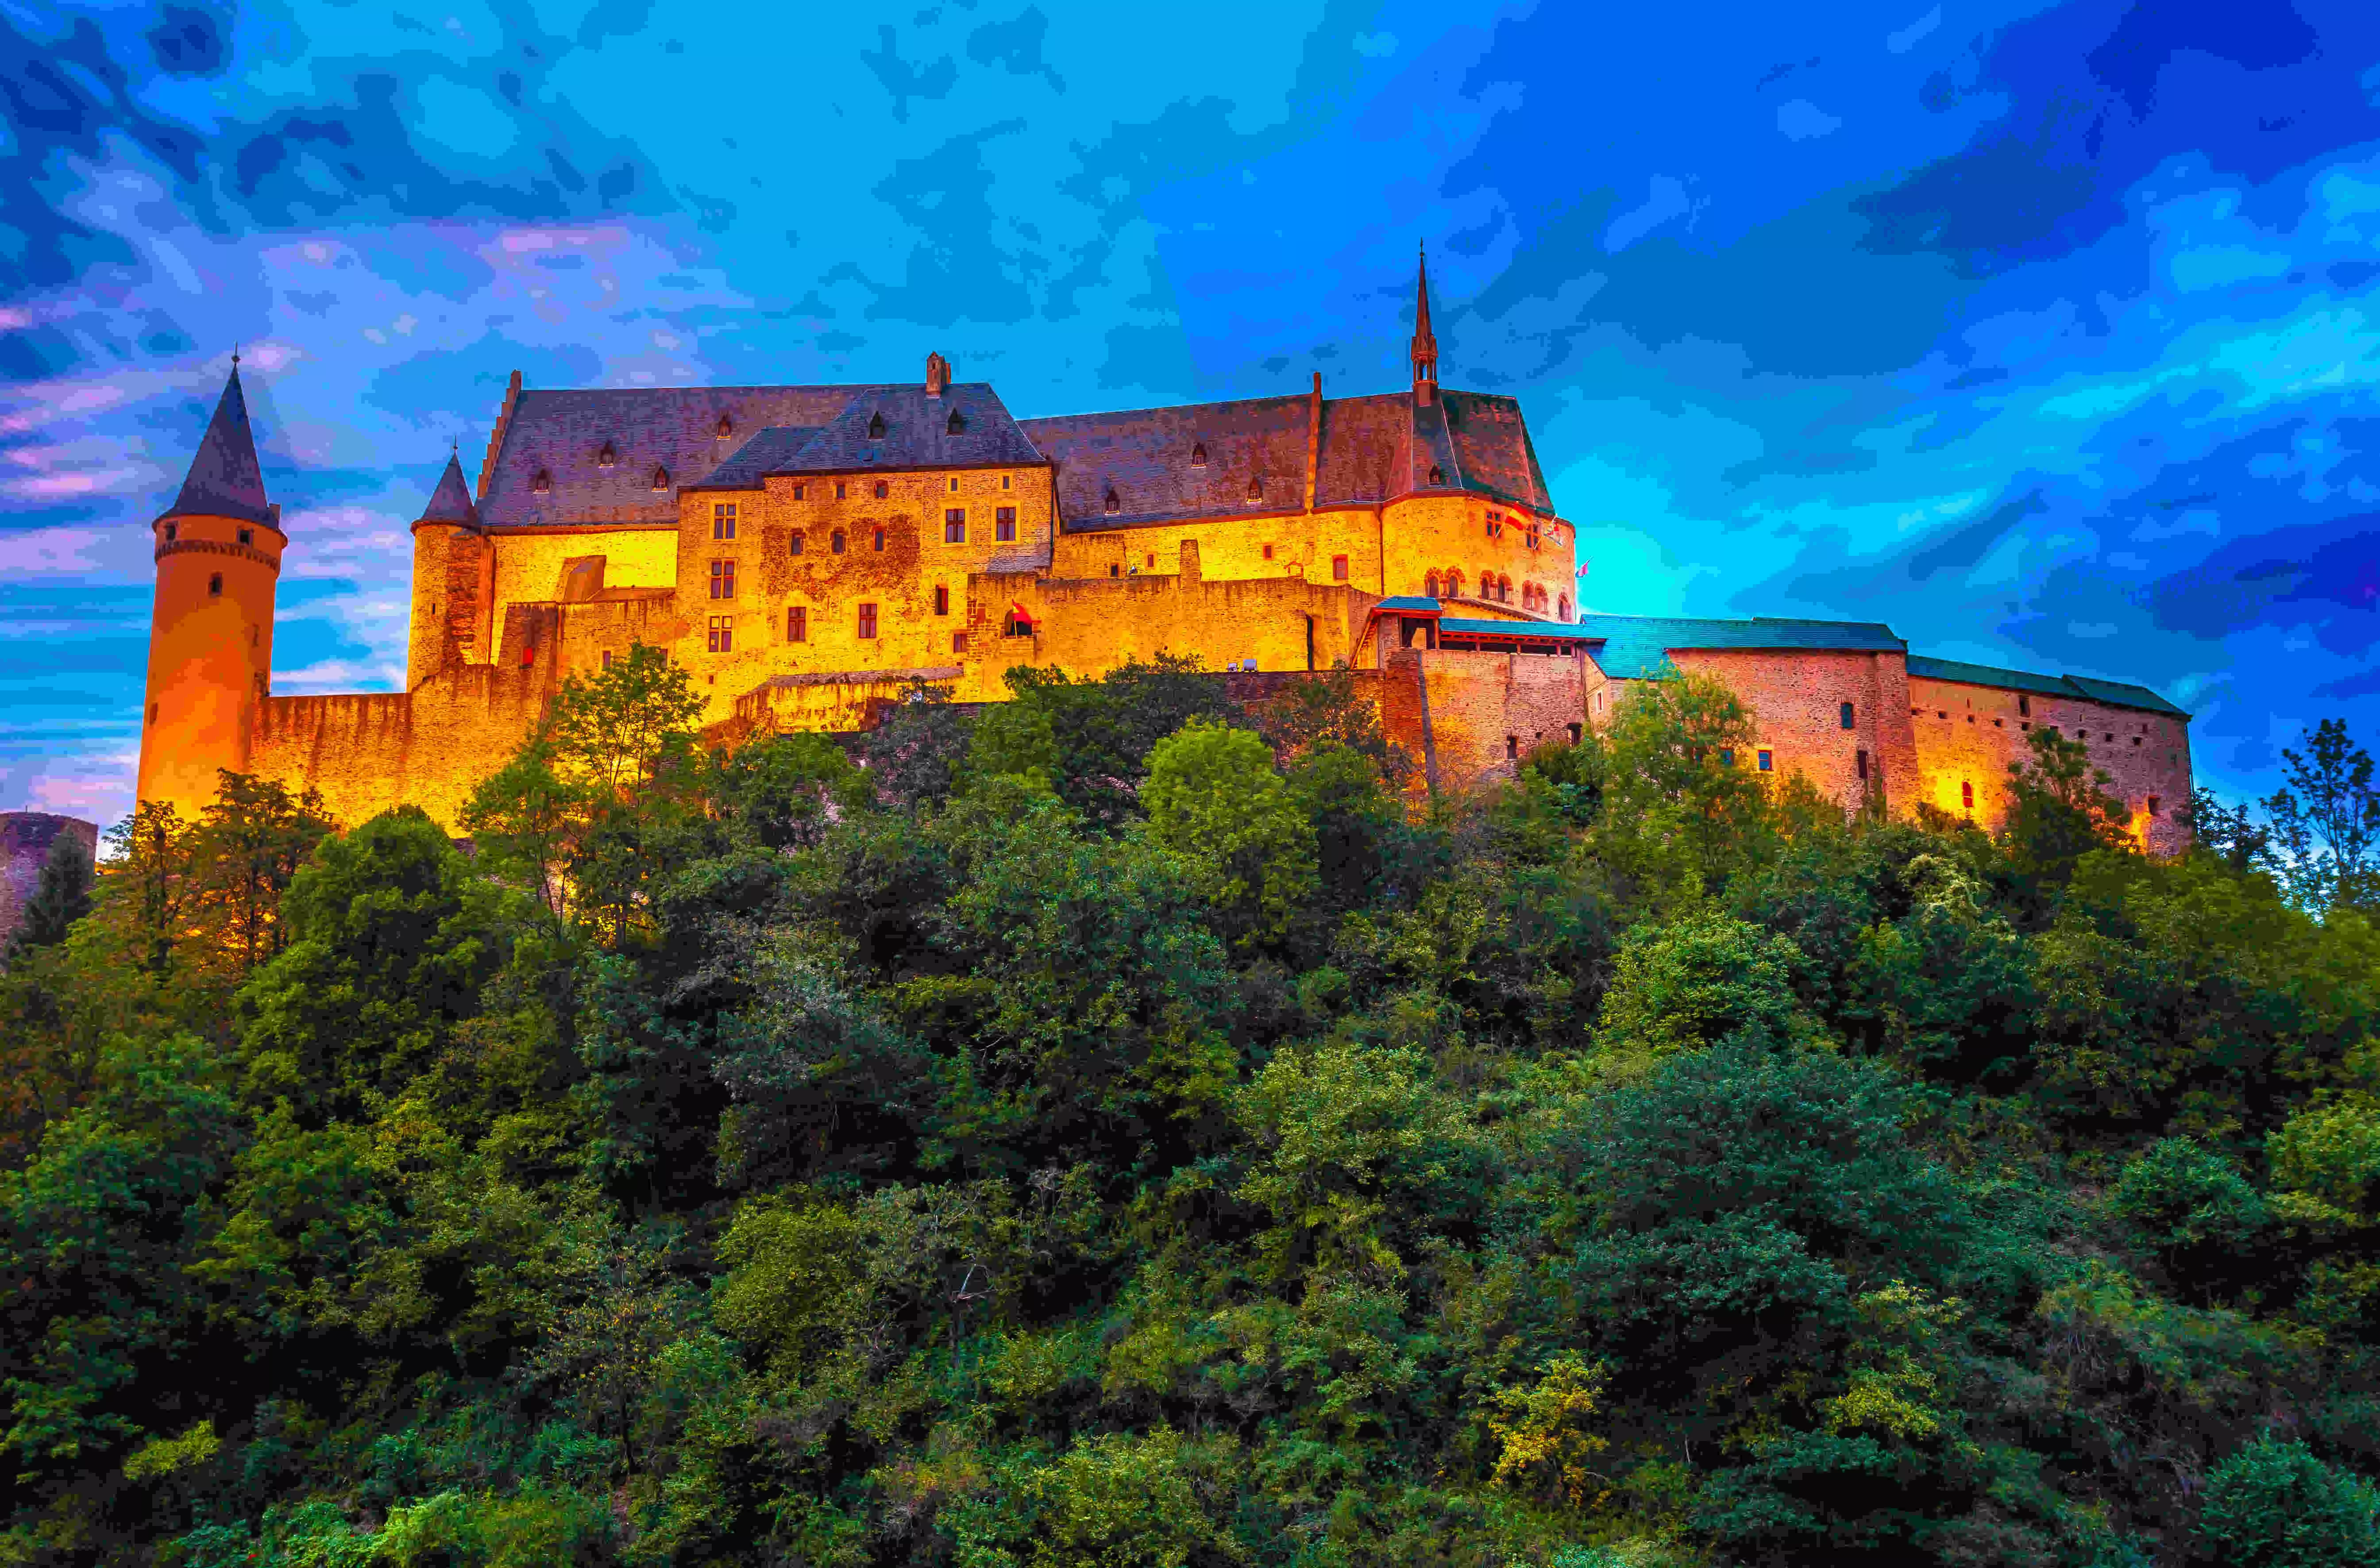 Het kasteel van Vianden in het donker